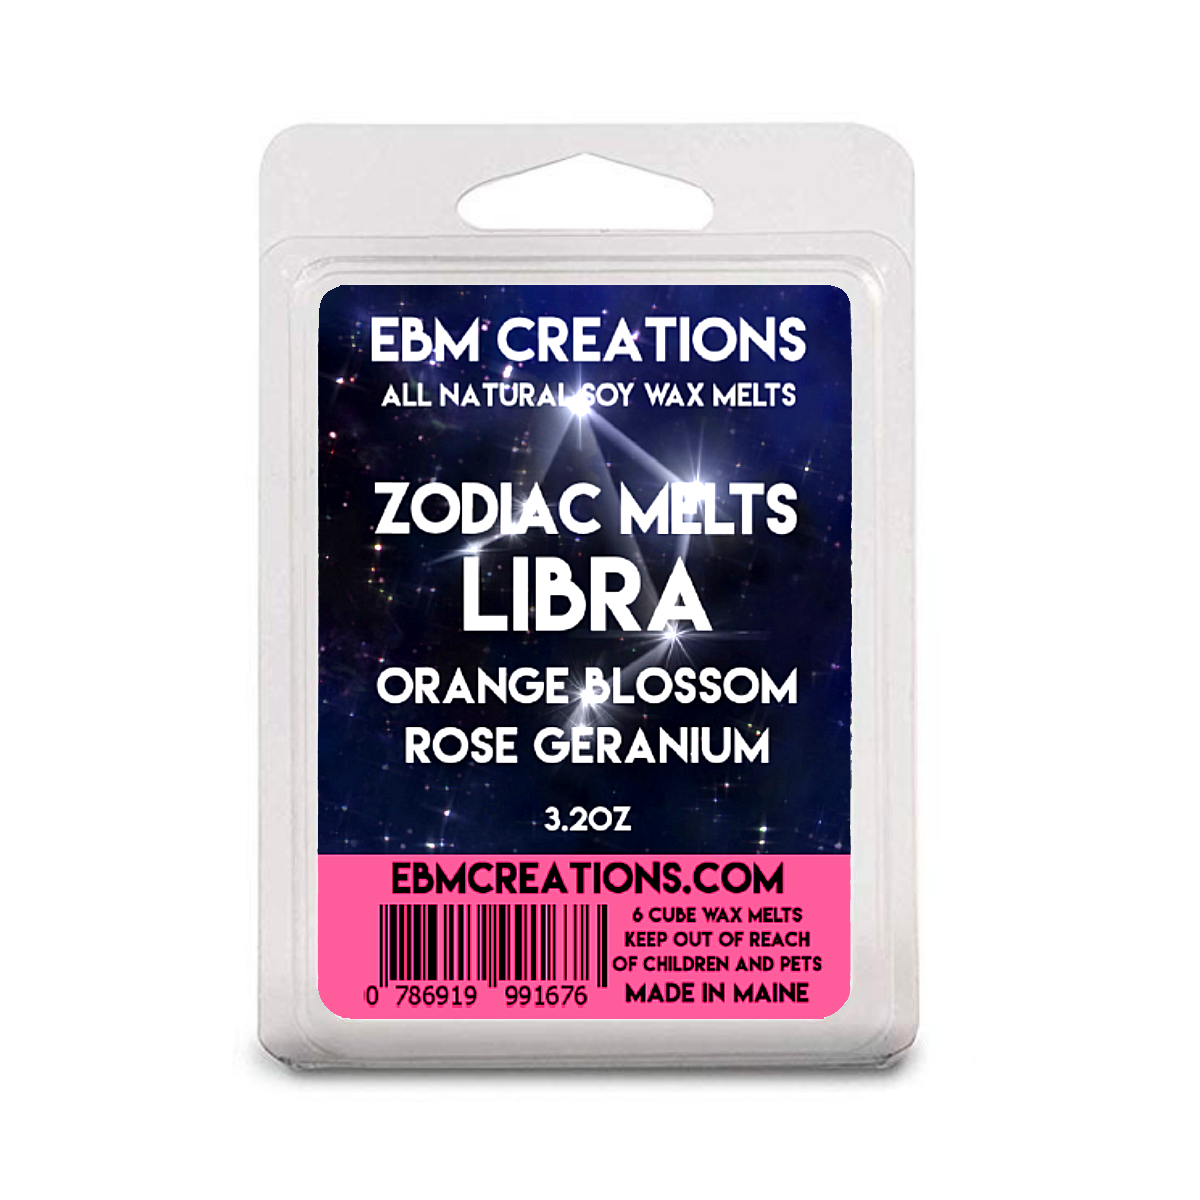 Libra - Orange Blossom Rose Geranium - 3.2 oz Clamshell